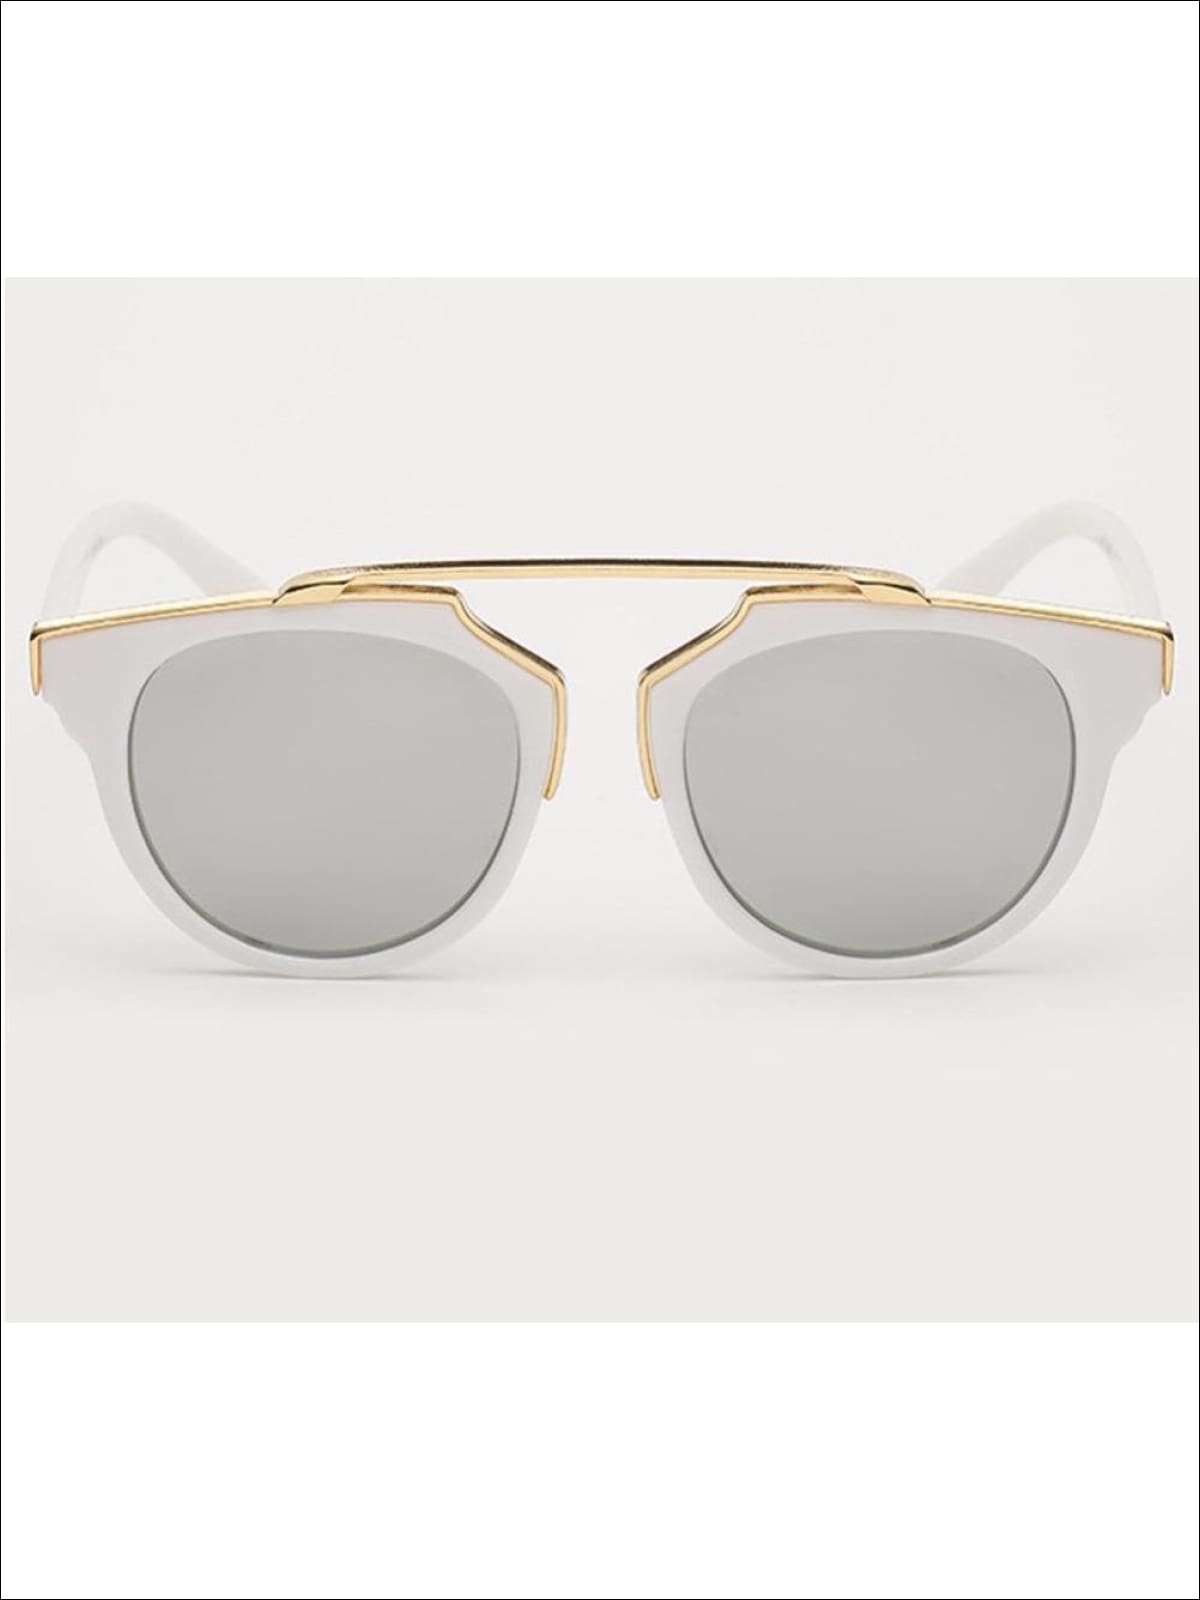 Girls Round Aviator Sunglasses with Gold Detail - Girls Sunglasses